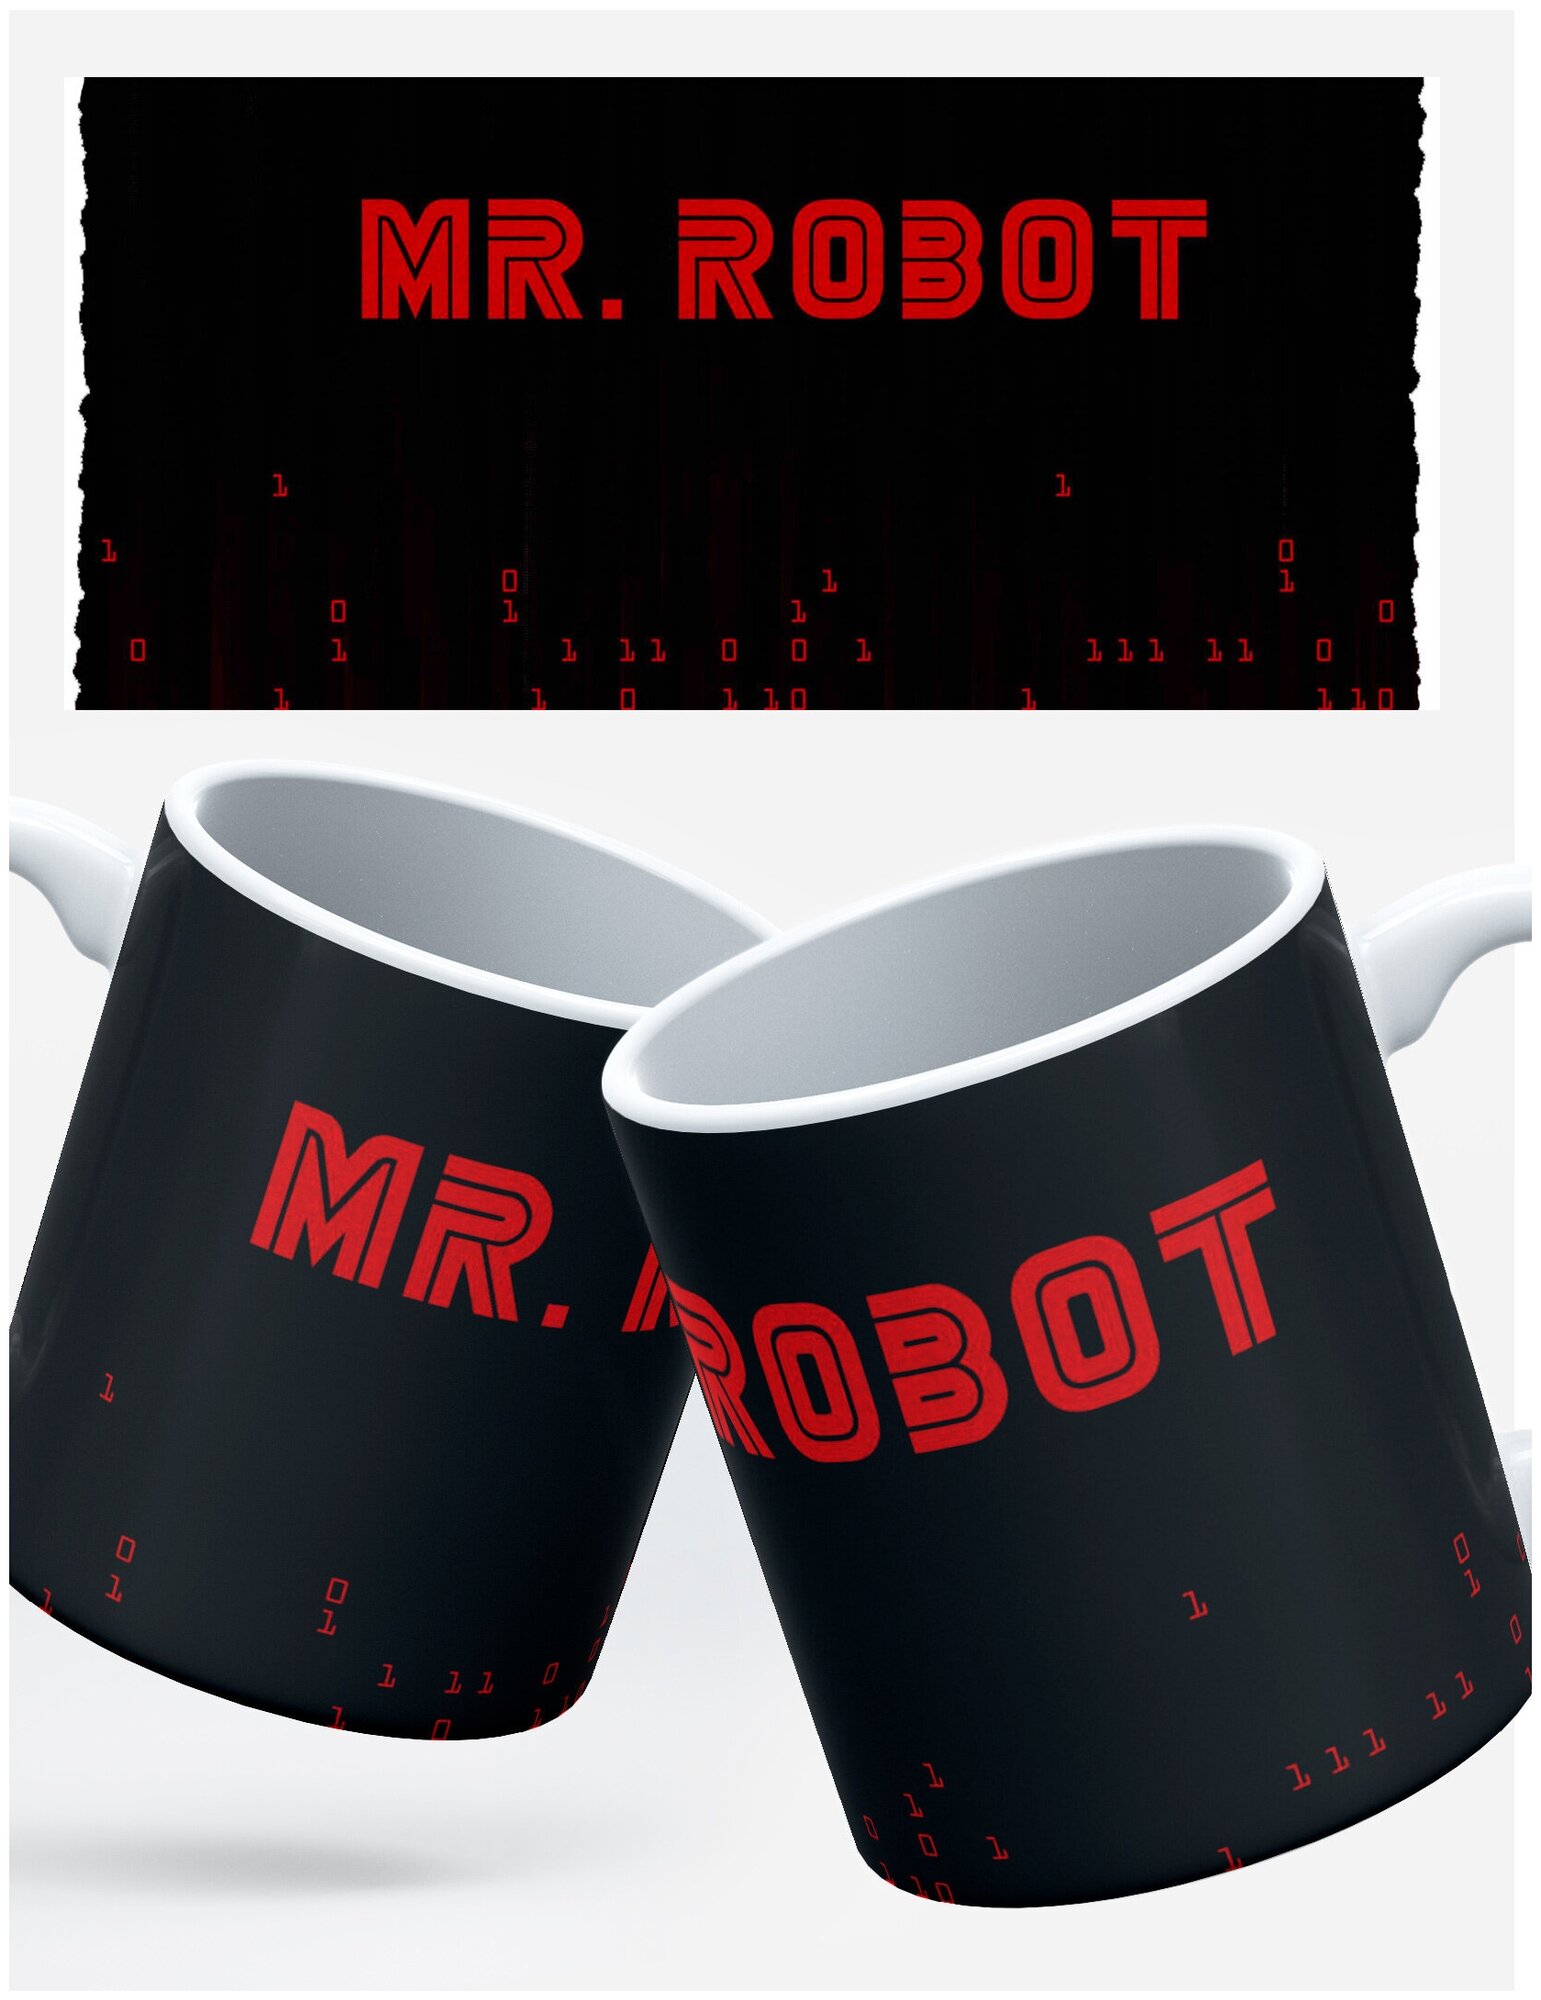 Кружка RocketCup с принтом "Mr Robot" сериал Мистер Робот